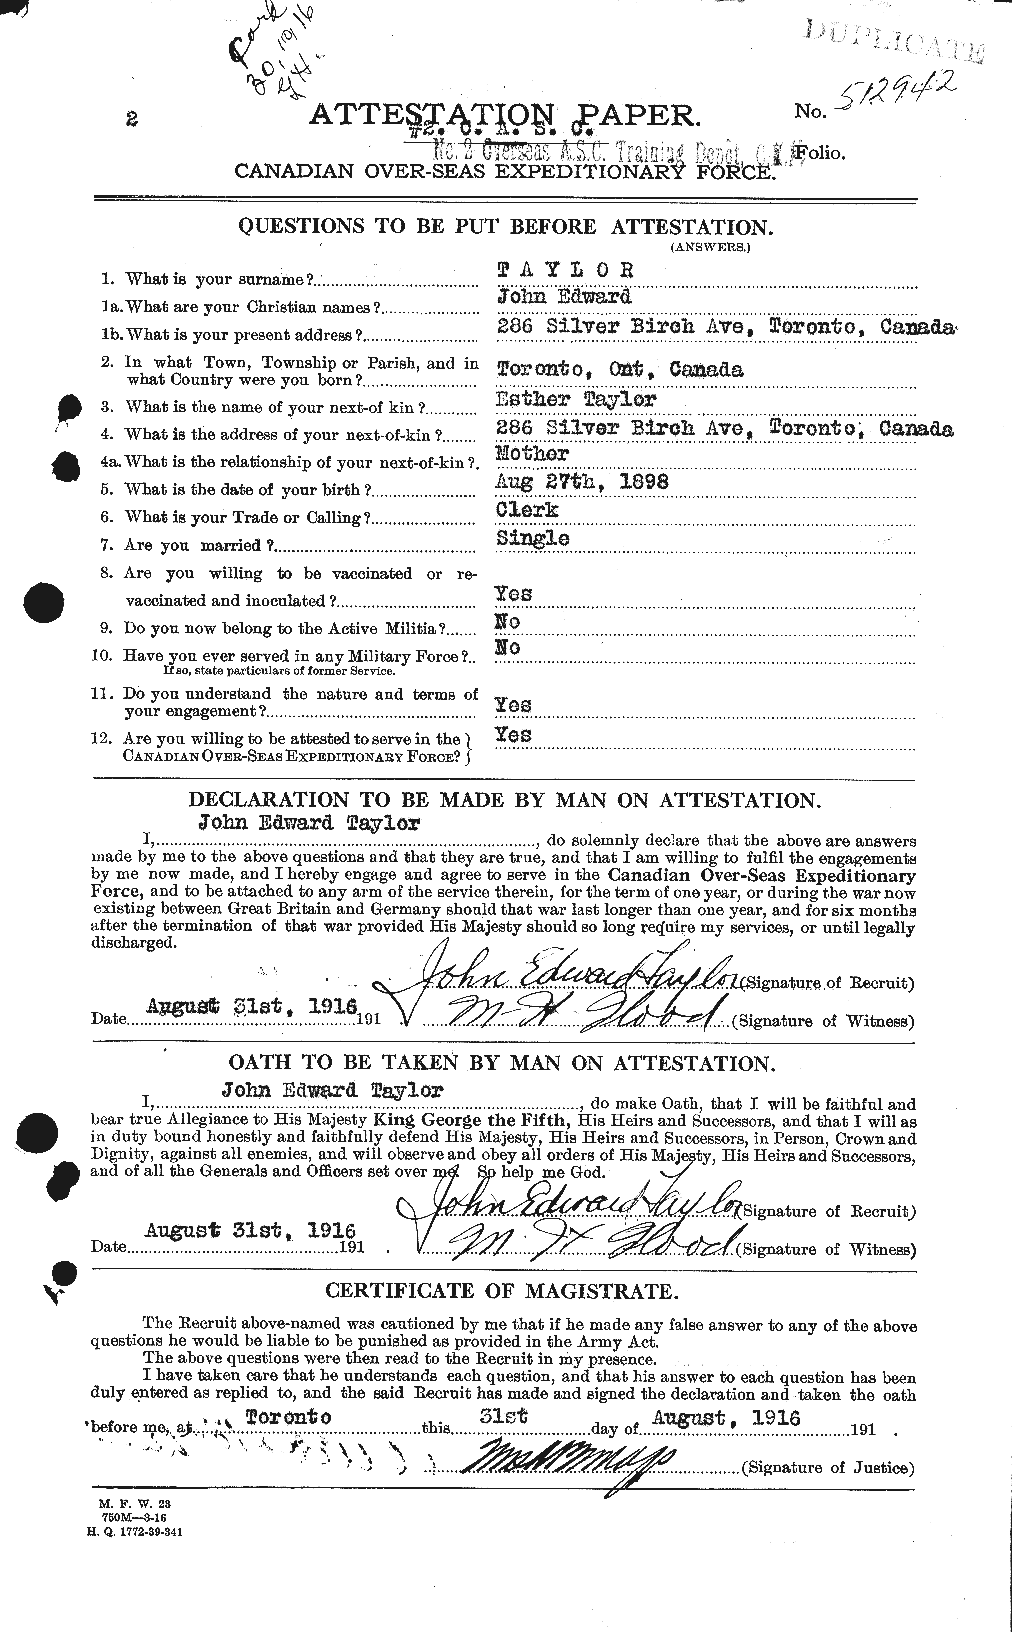 Dossiers du Personnel de la Première Guerre mondiale - CEC 627076a